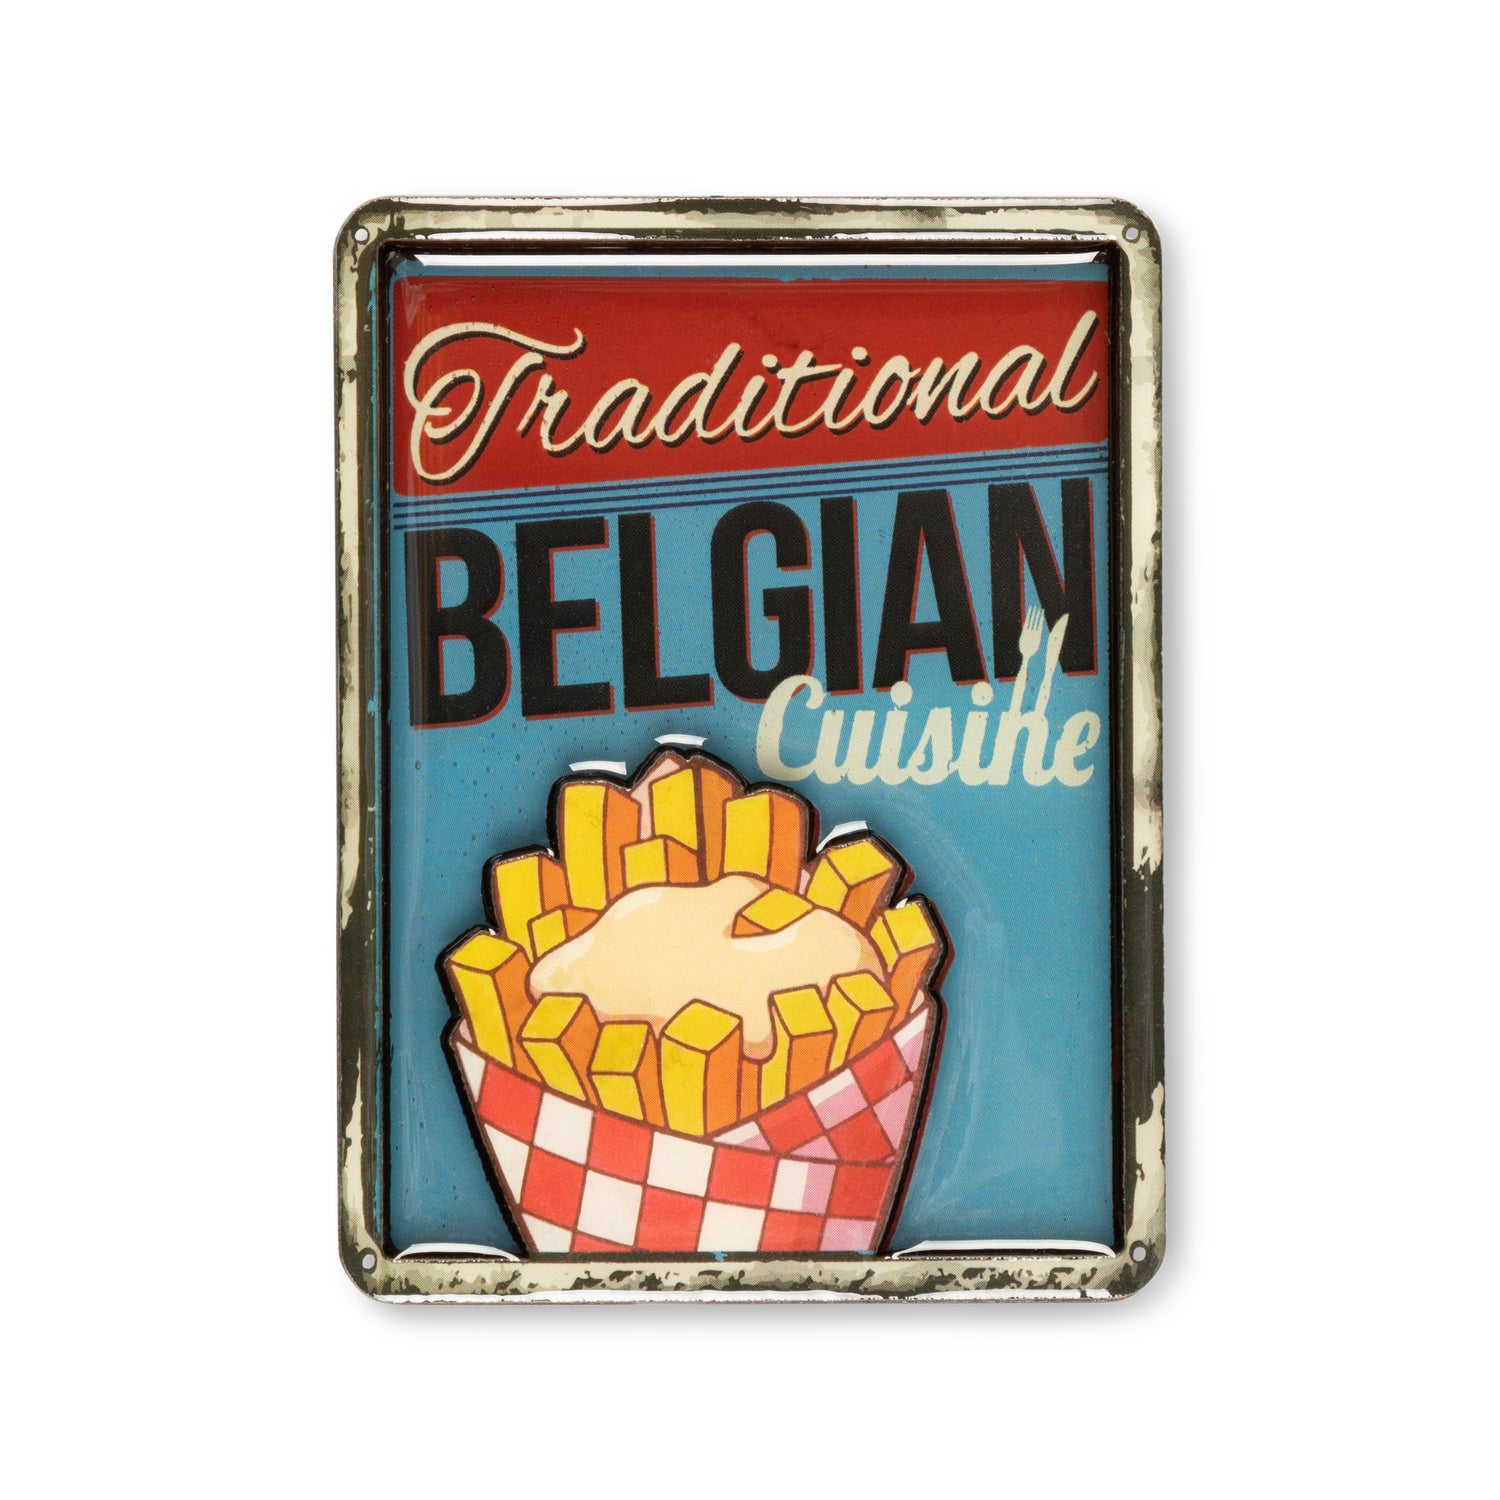 Magnet - Belgian Cuisine Fries - Belgium